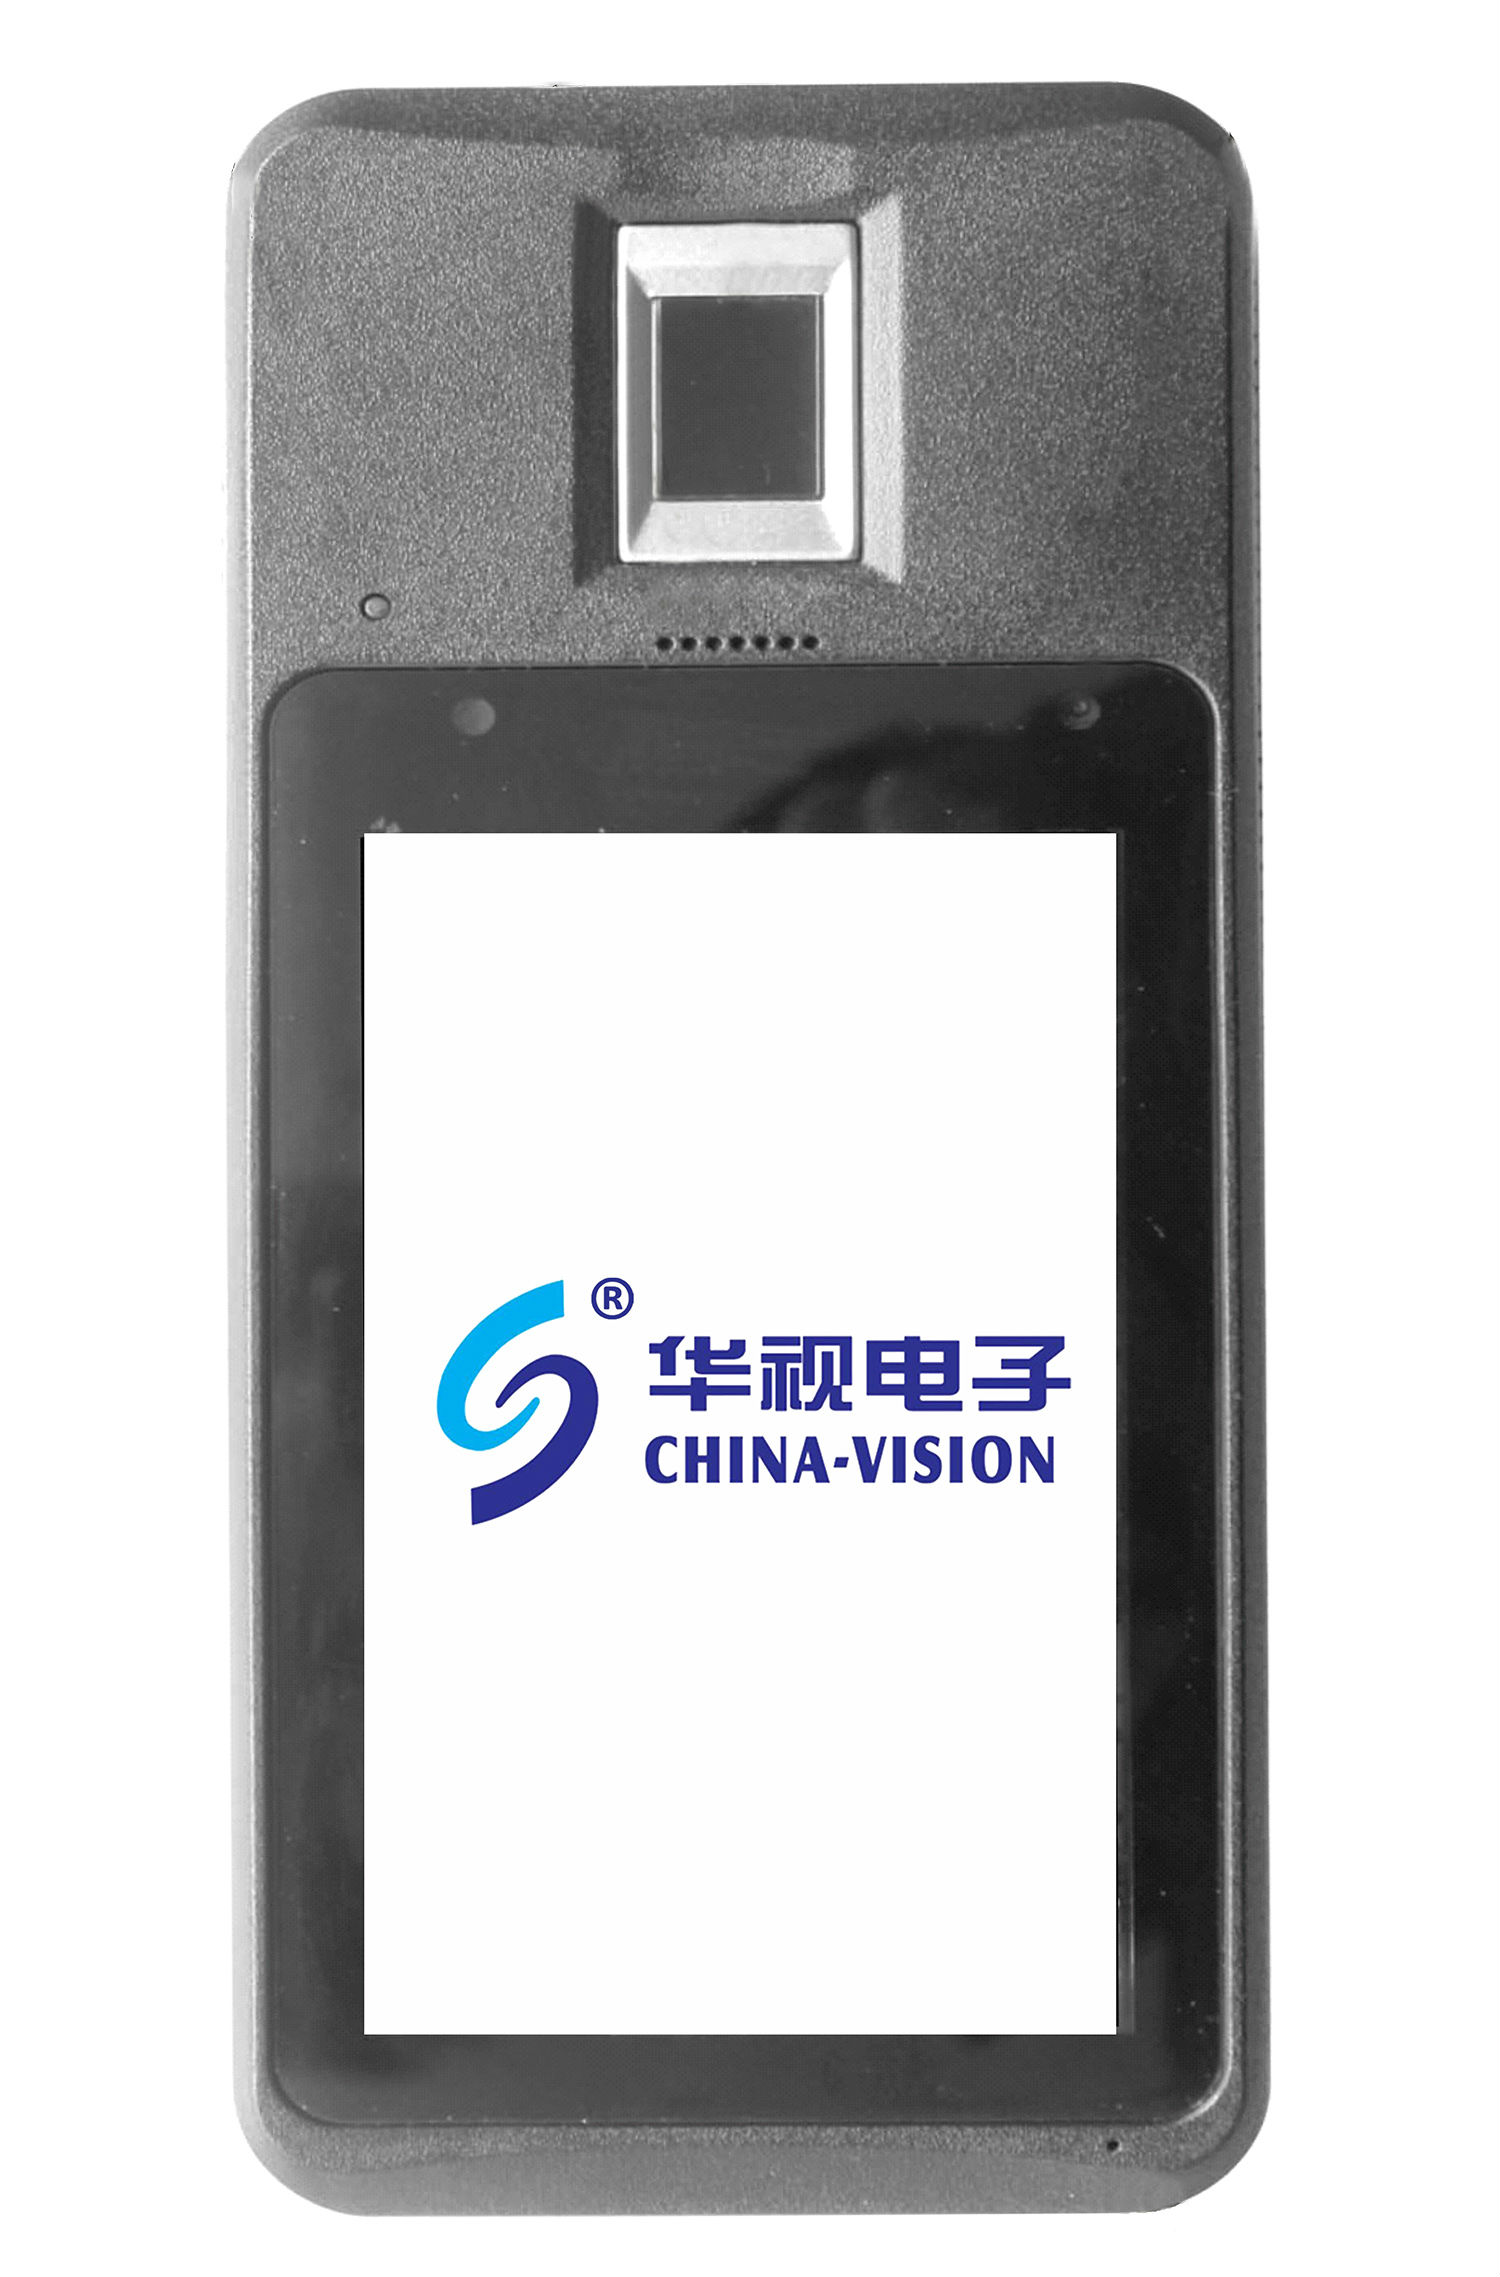 华视电子CVT-550IM手持式身份证阅读器读卡器(3G联通) 识别器识别仪